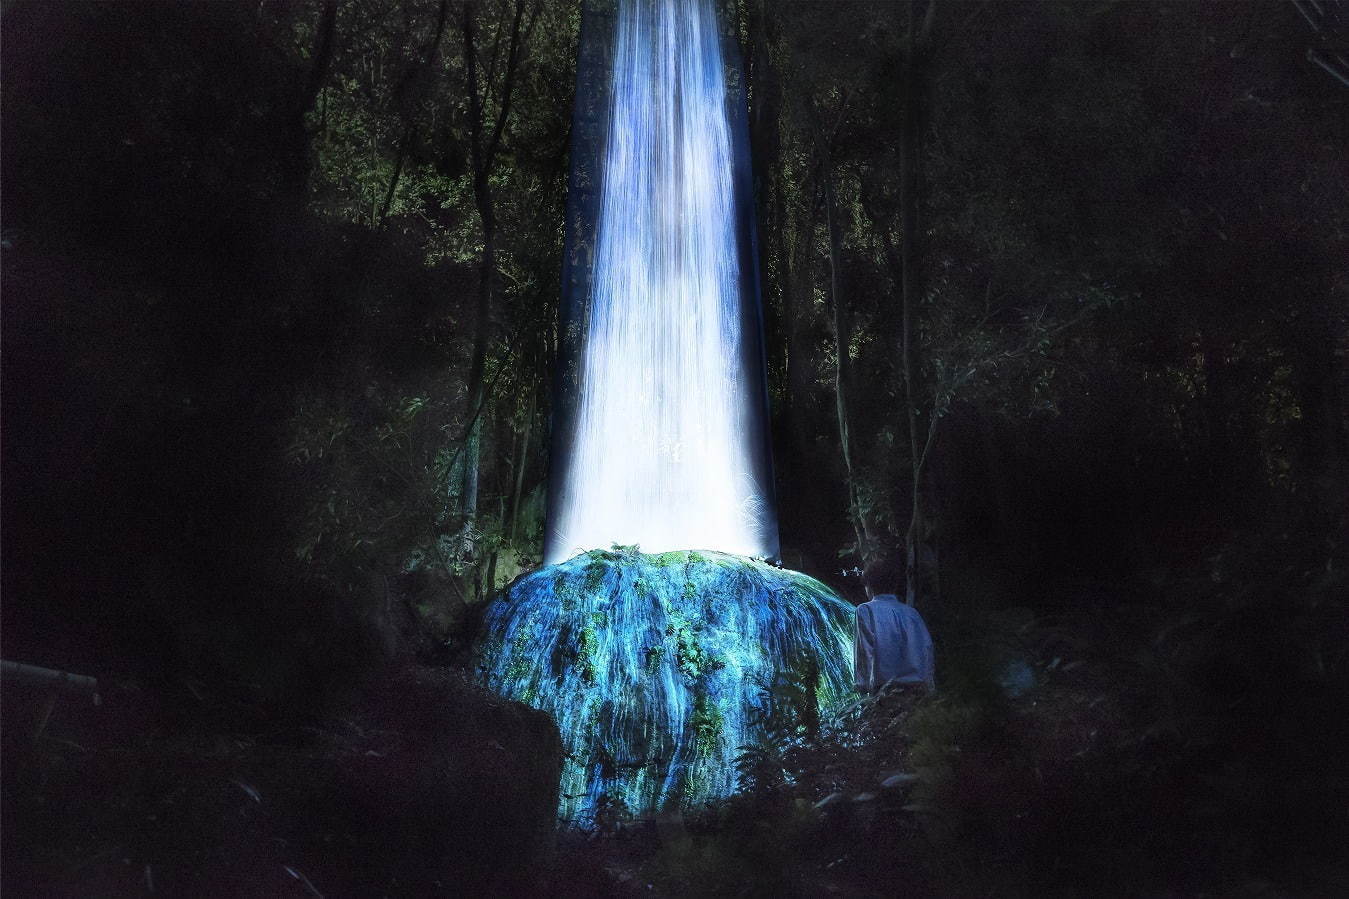 『かみさまの御前なる岩に憑依する滝 / Universe of Water Particles on a Sacred Rock』
teamLab, 2017, Digitized Nature